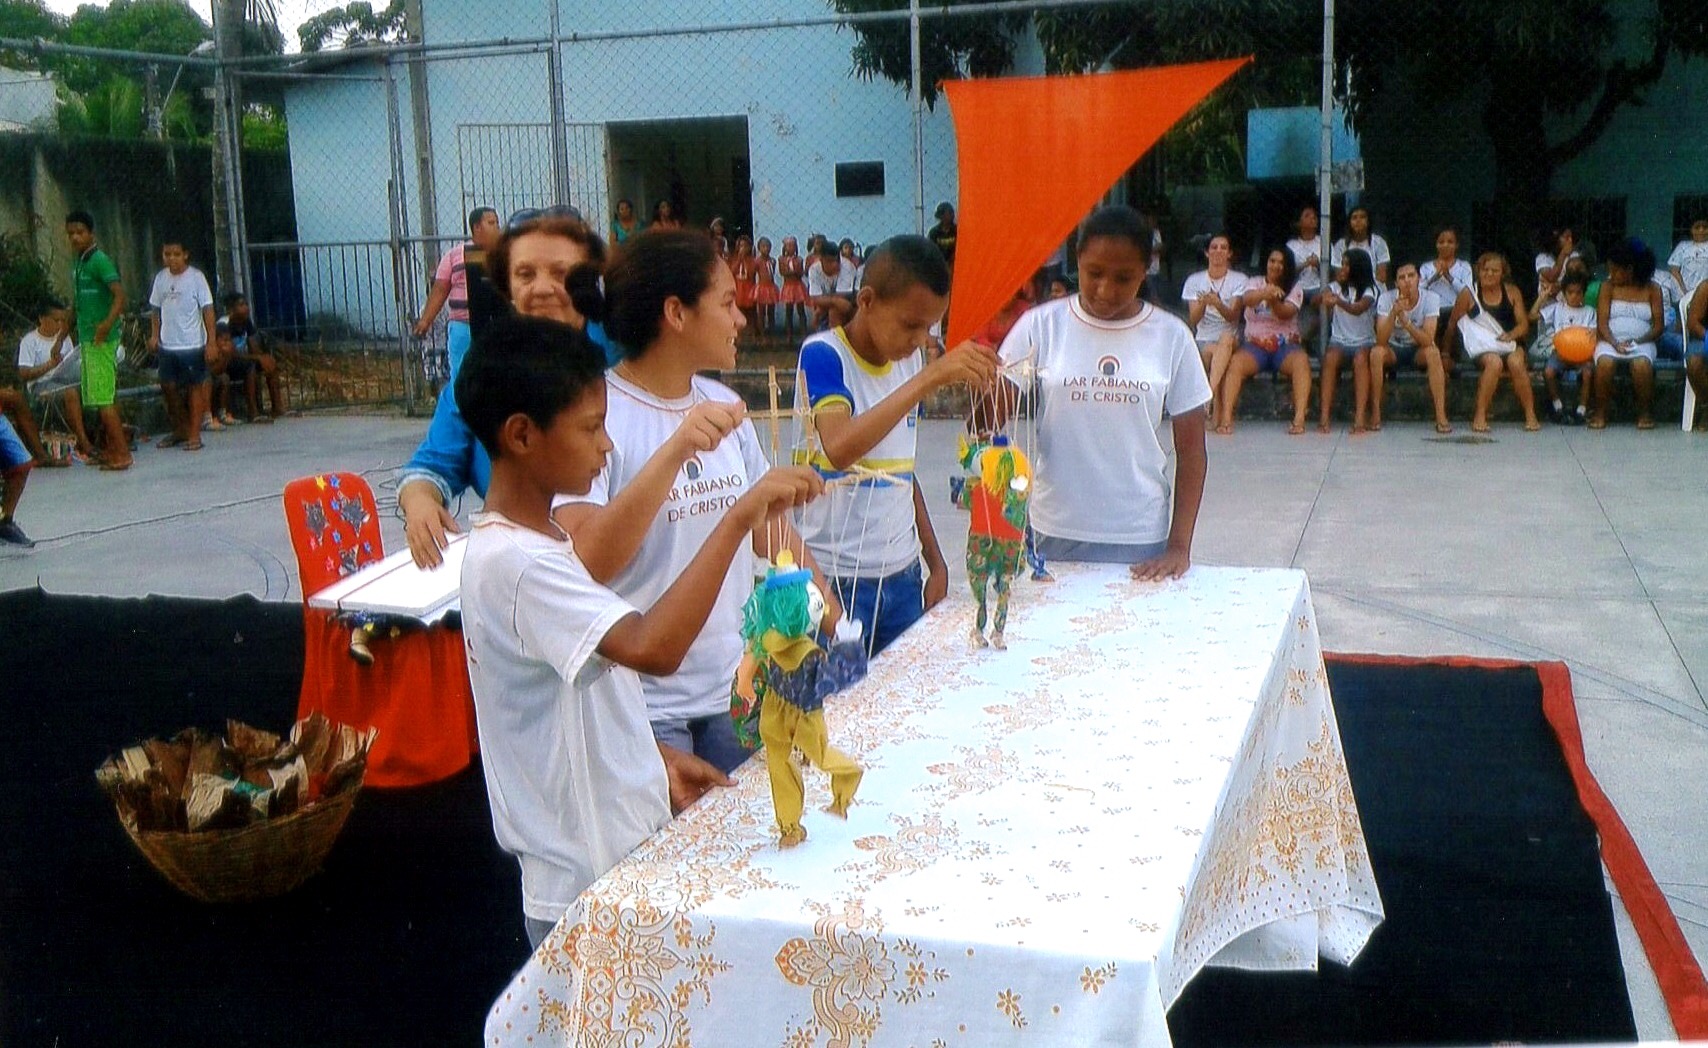 Cooperativa recifense trabalha com a lúdica arte do Teatro de Bonecos a favor da educação e da vida em comunidade.